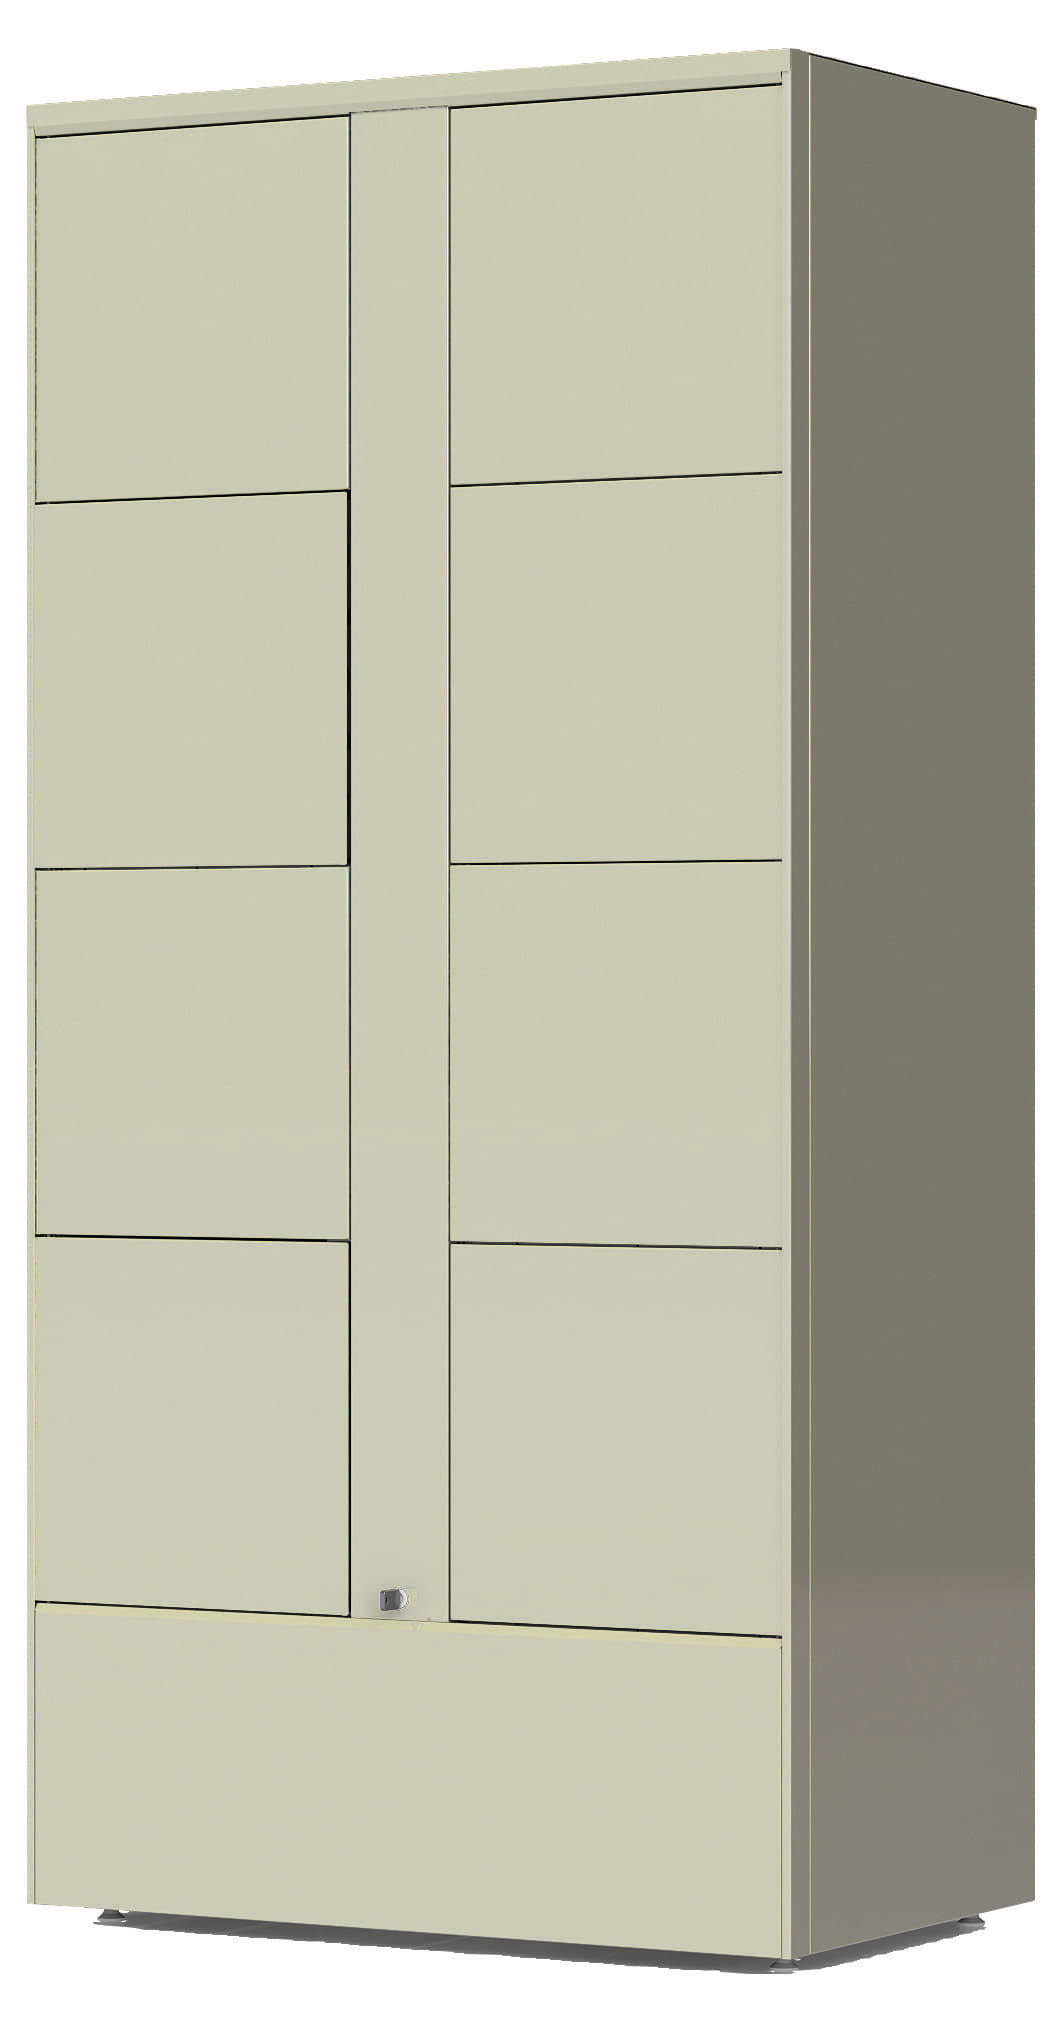 indoor smart package locker module